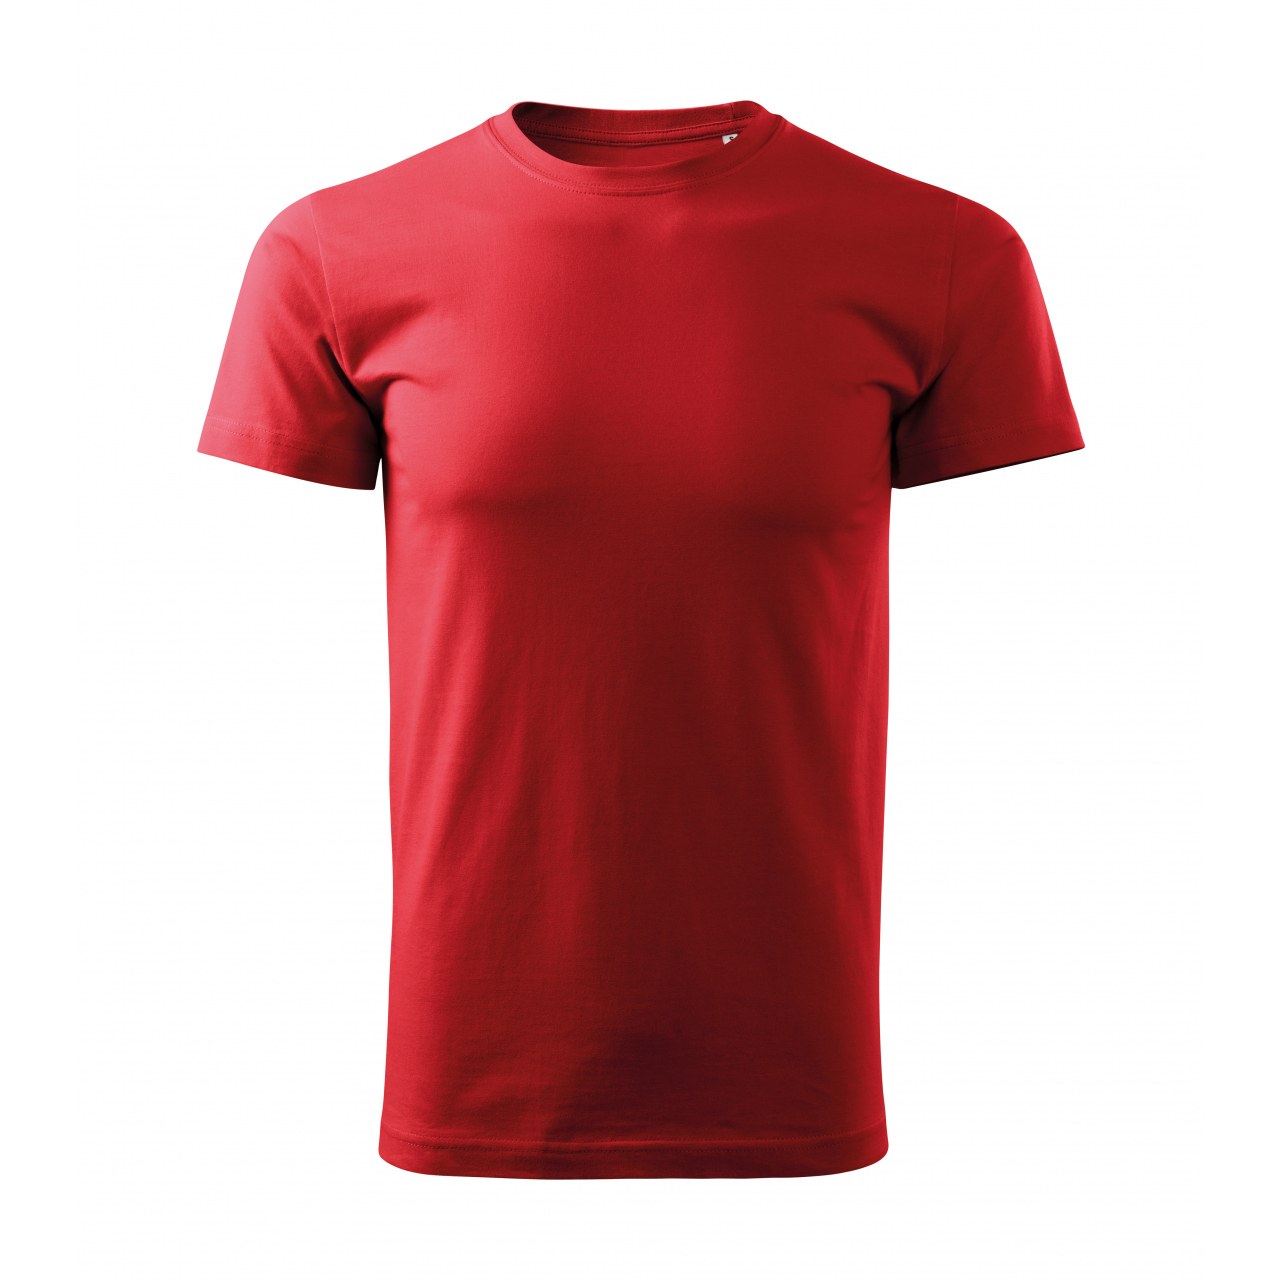 Tričko pánské Malfini Basic Free - červené, S